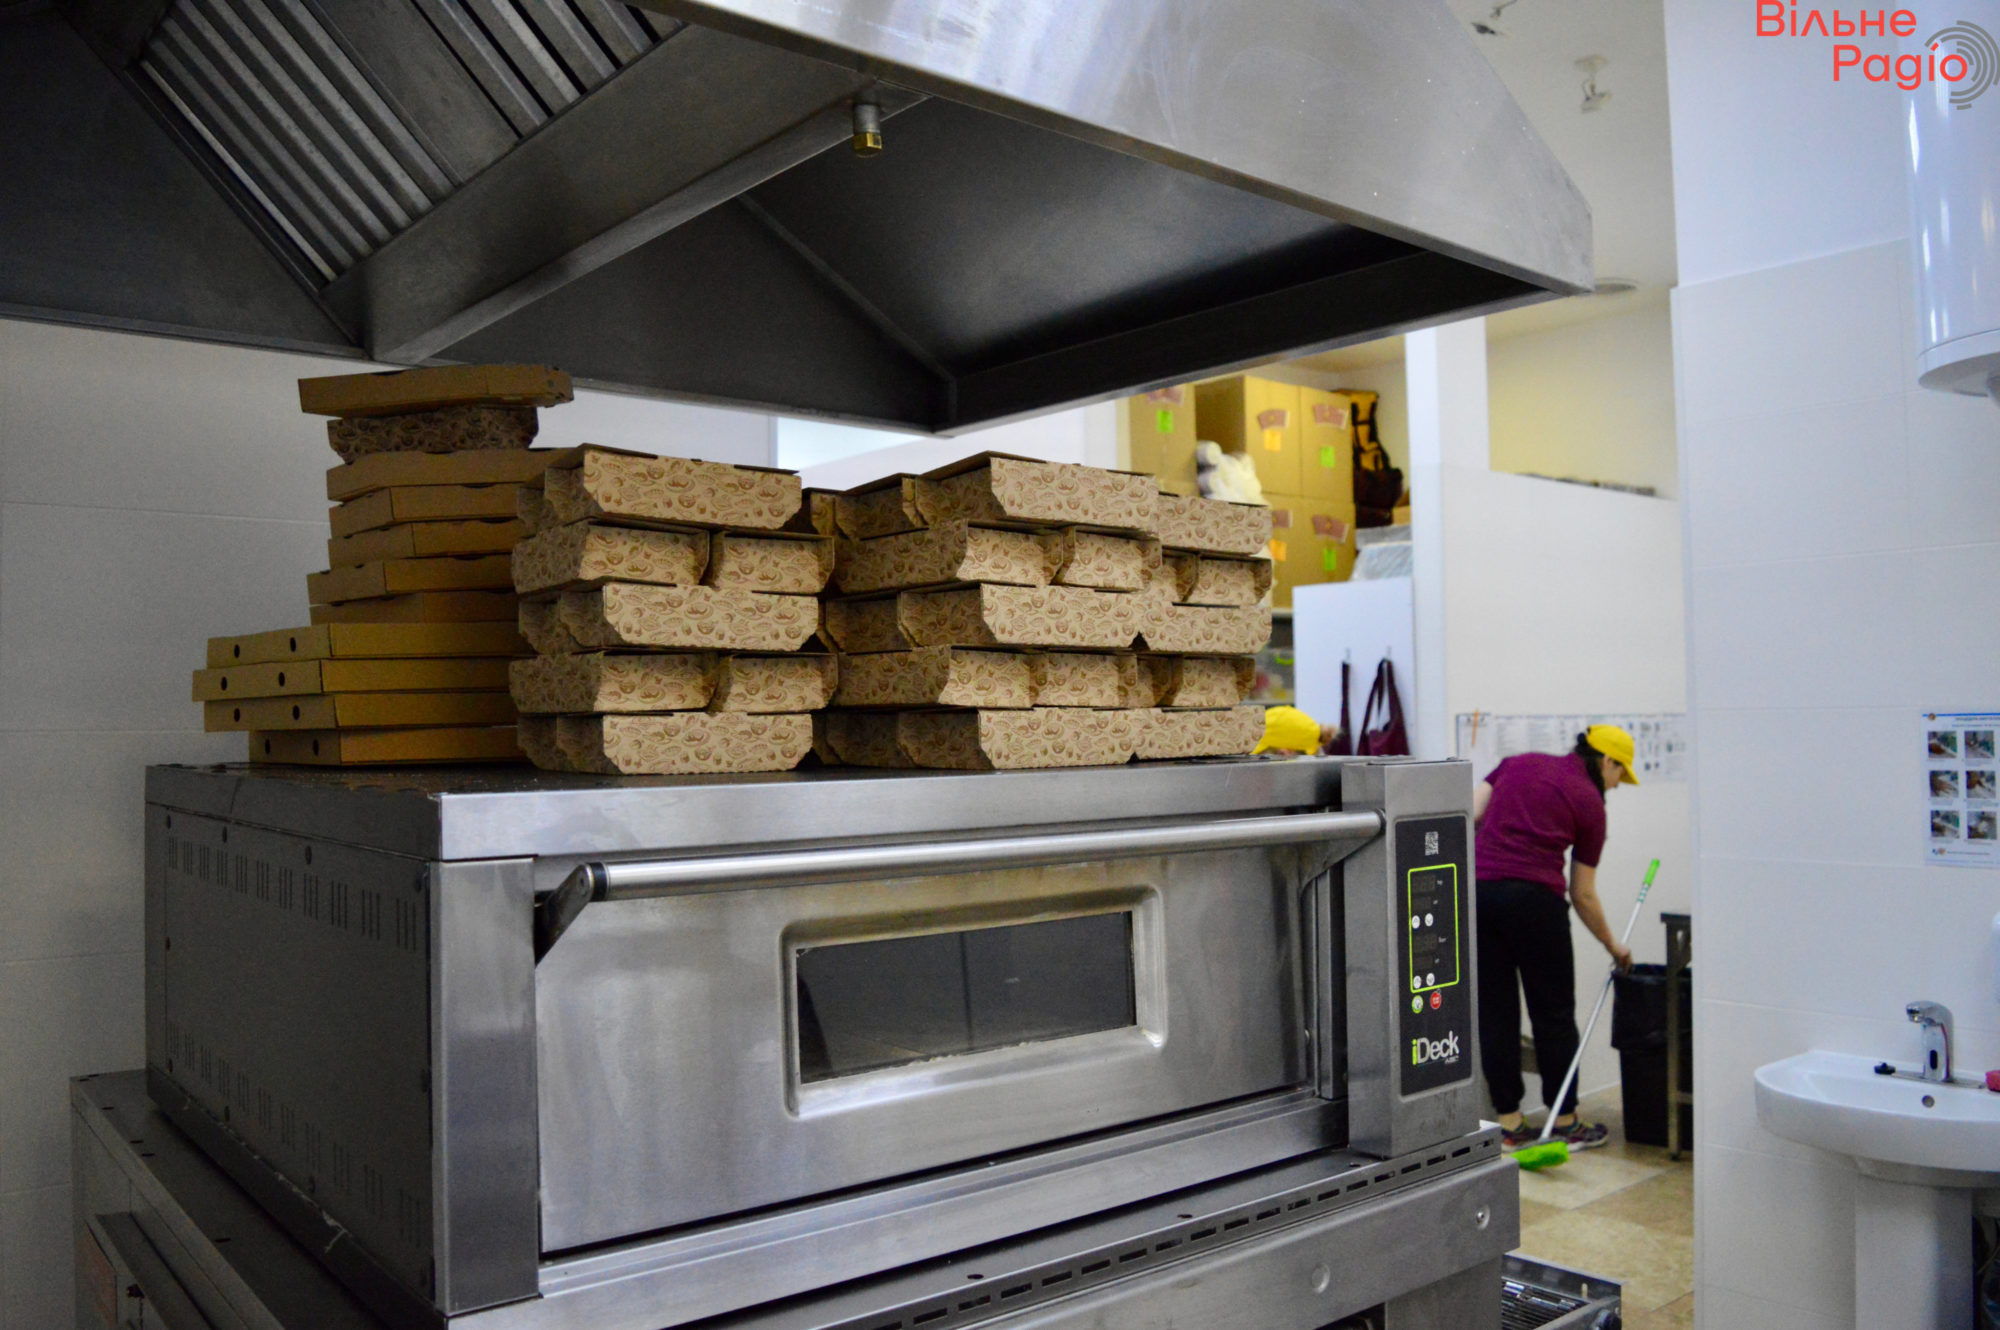 Східна піца у Києві: як працює мережа, яка пекла по 1500 благодійних піц на Донеччині, і витримує тісто по 3 дні (репортаж) 10